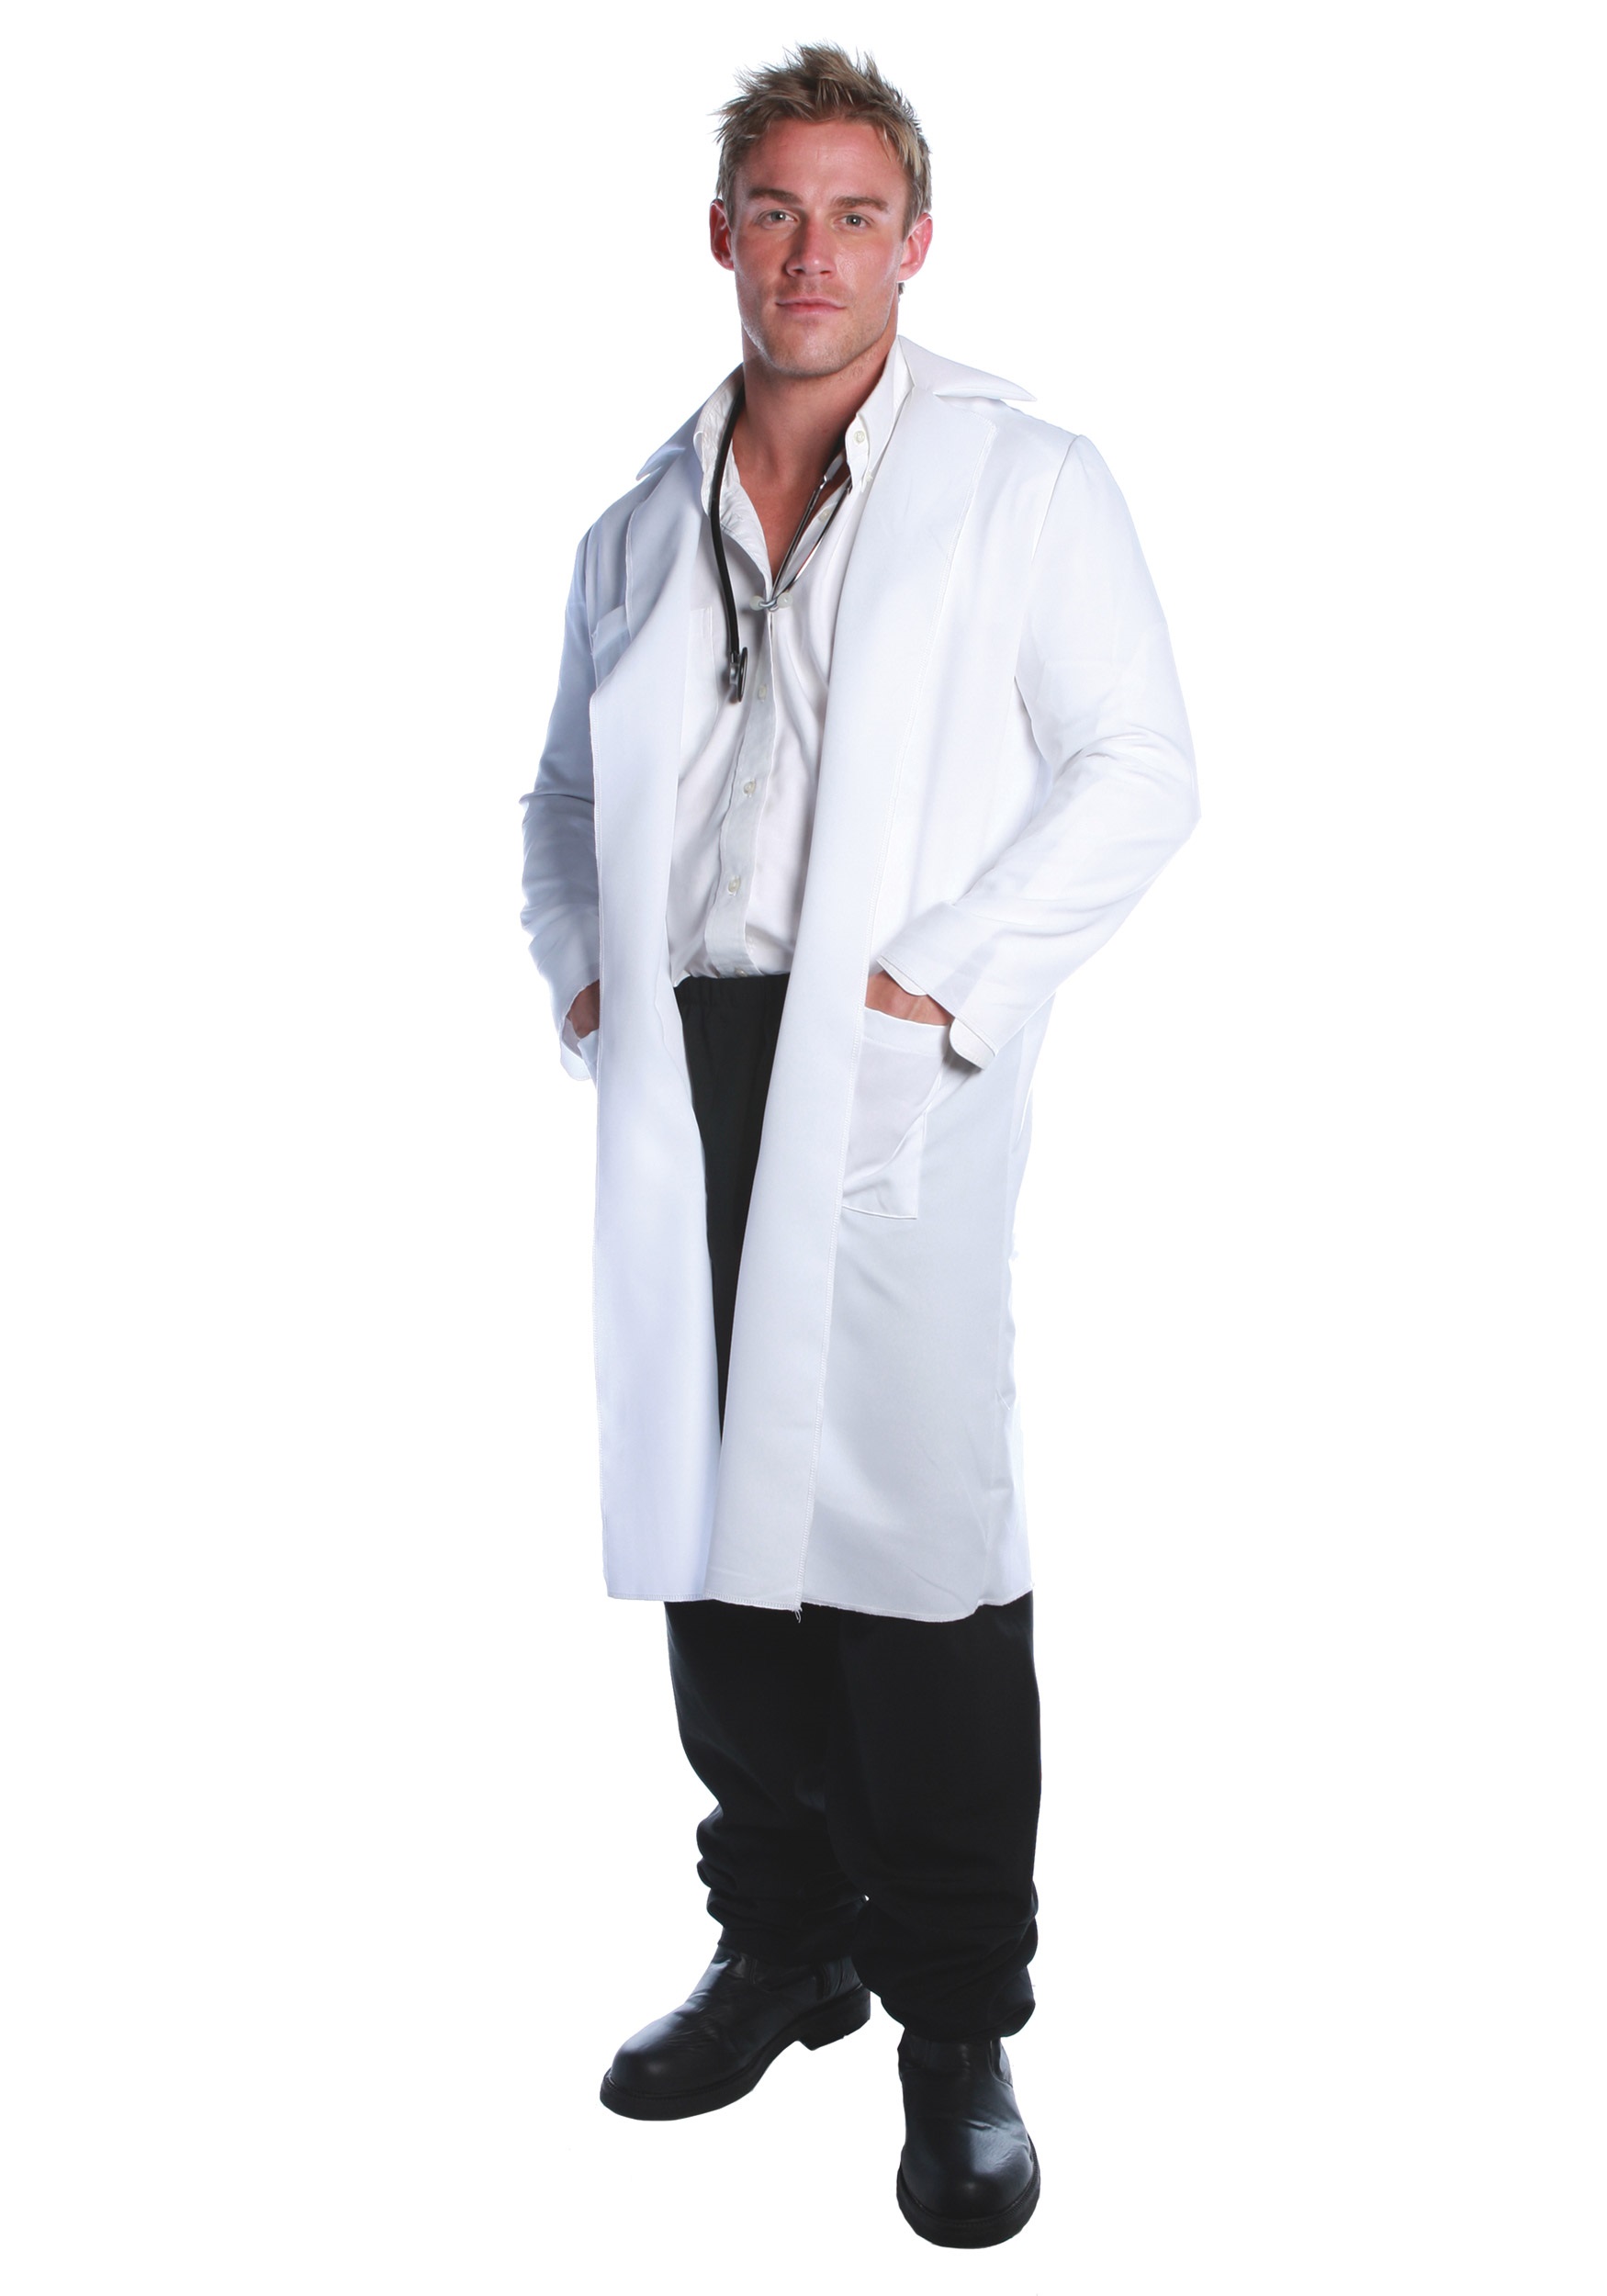 Details about   Women Men White Hospital Uniform Lab Coat Doctor Long Coats Costume S-3XL 